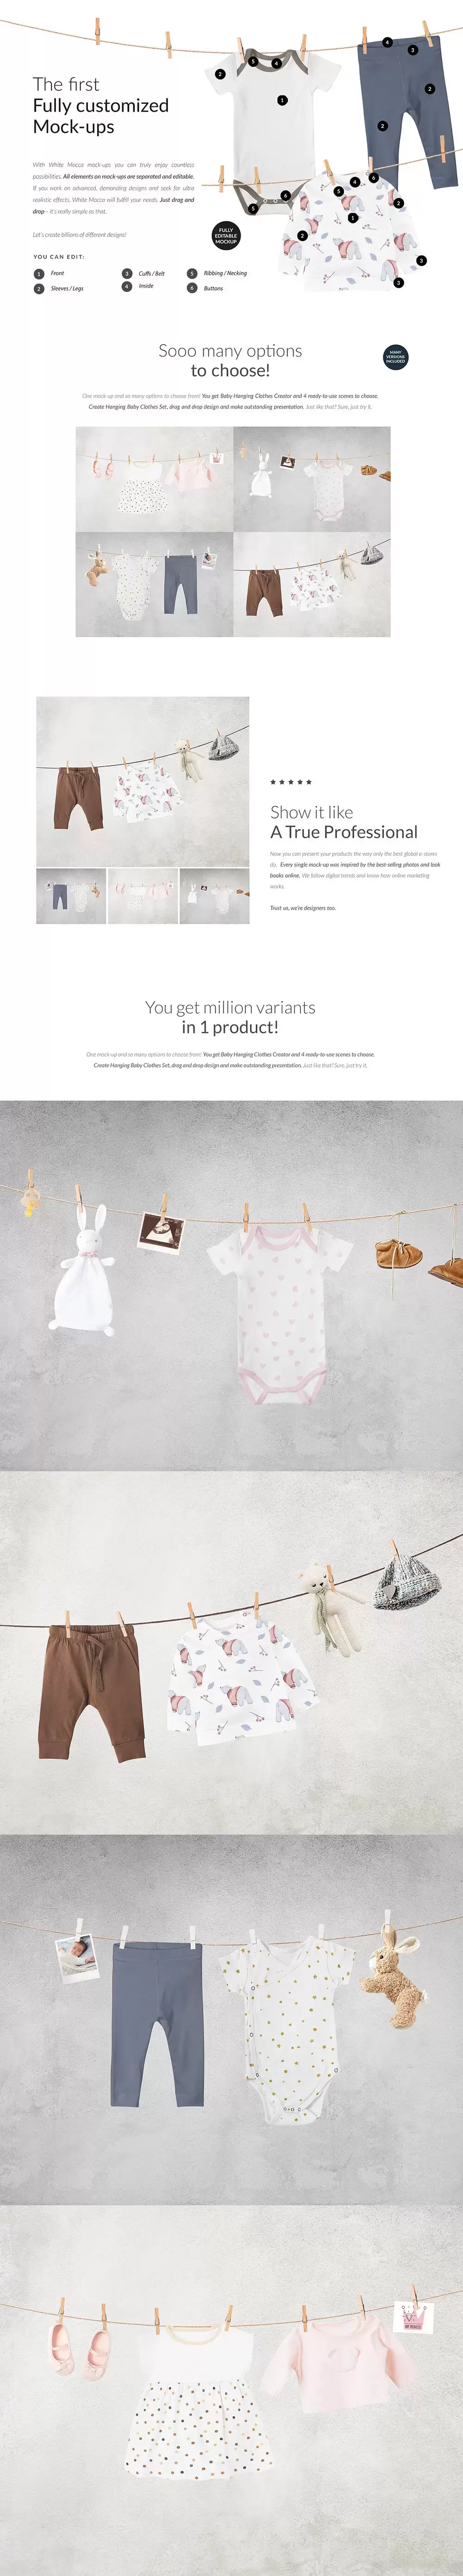 晾挂场景婴儿服装样机套件[1.15GB,PSD]免费下载插图